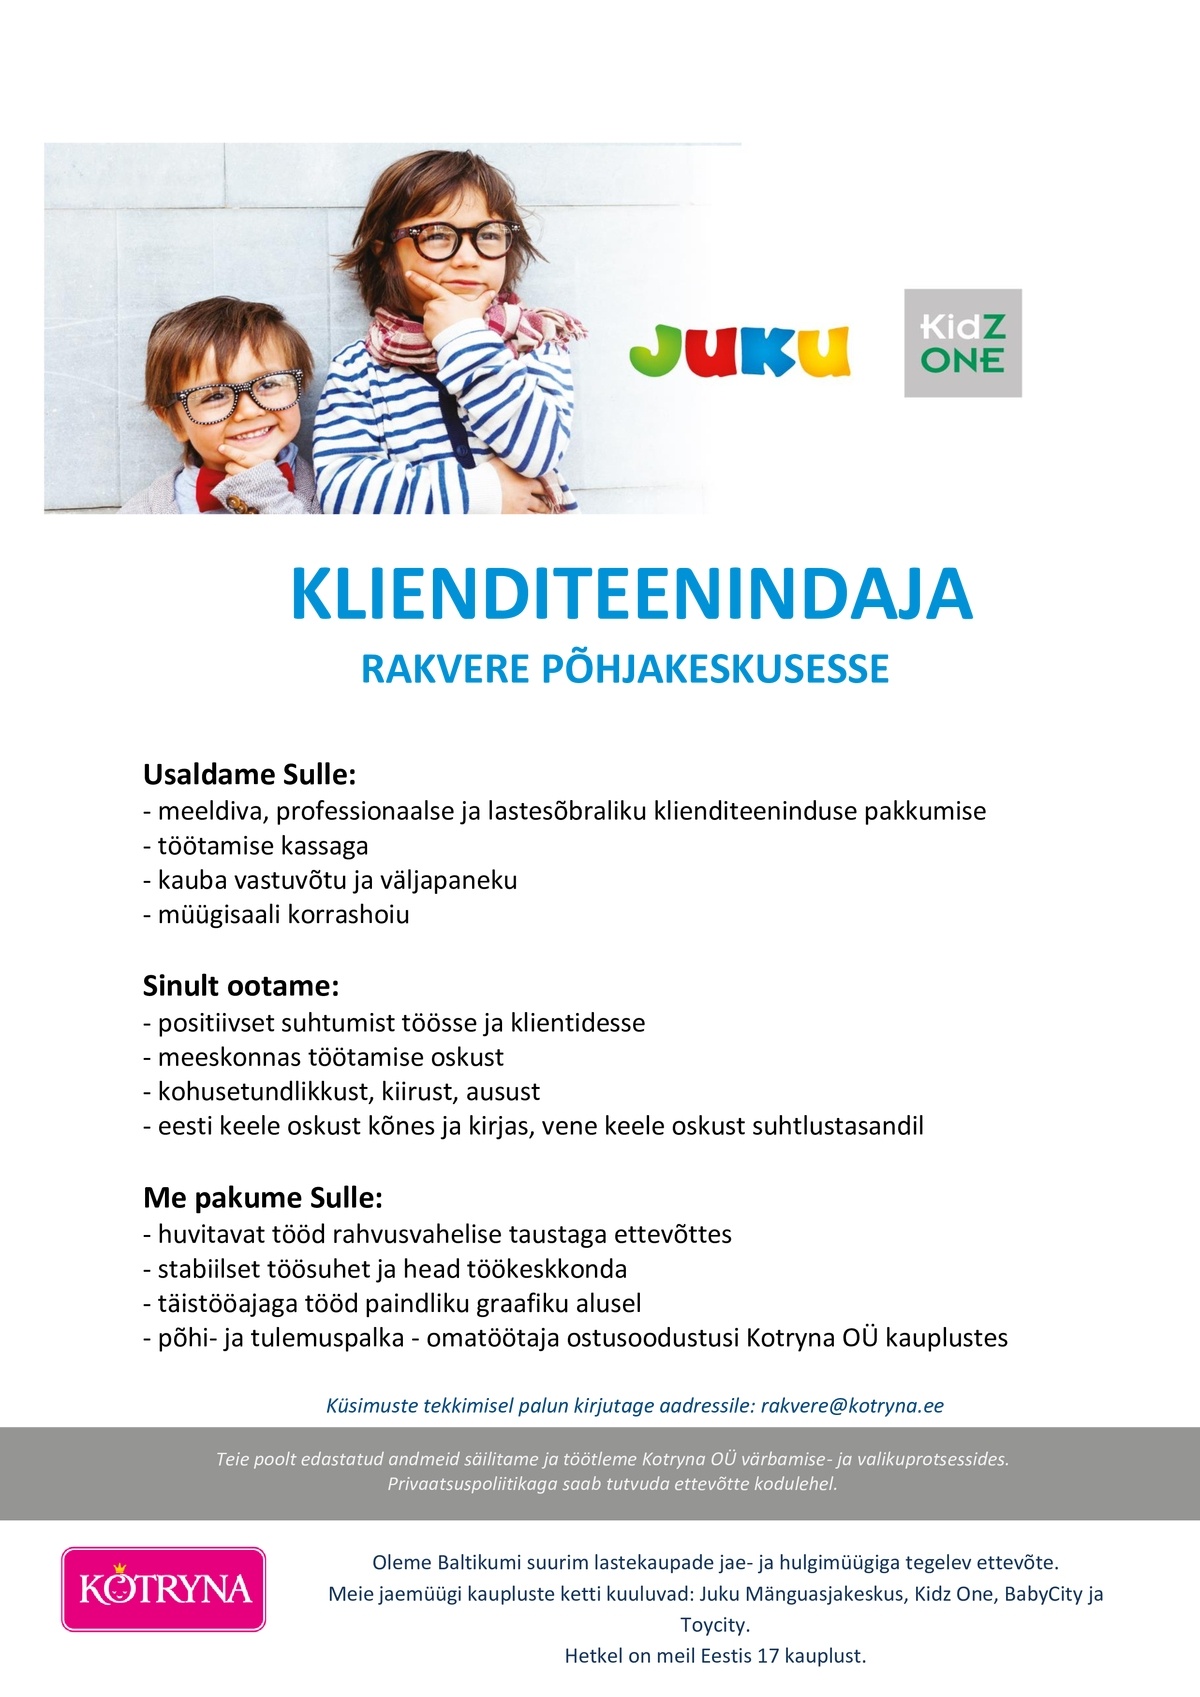 Kotryna OÜ Rakvere Juku/KidzOne klienditeenindaja